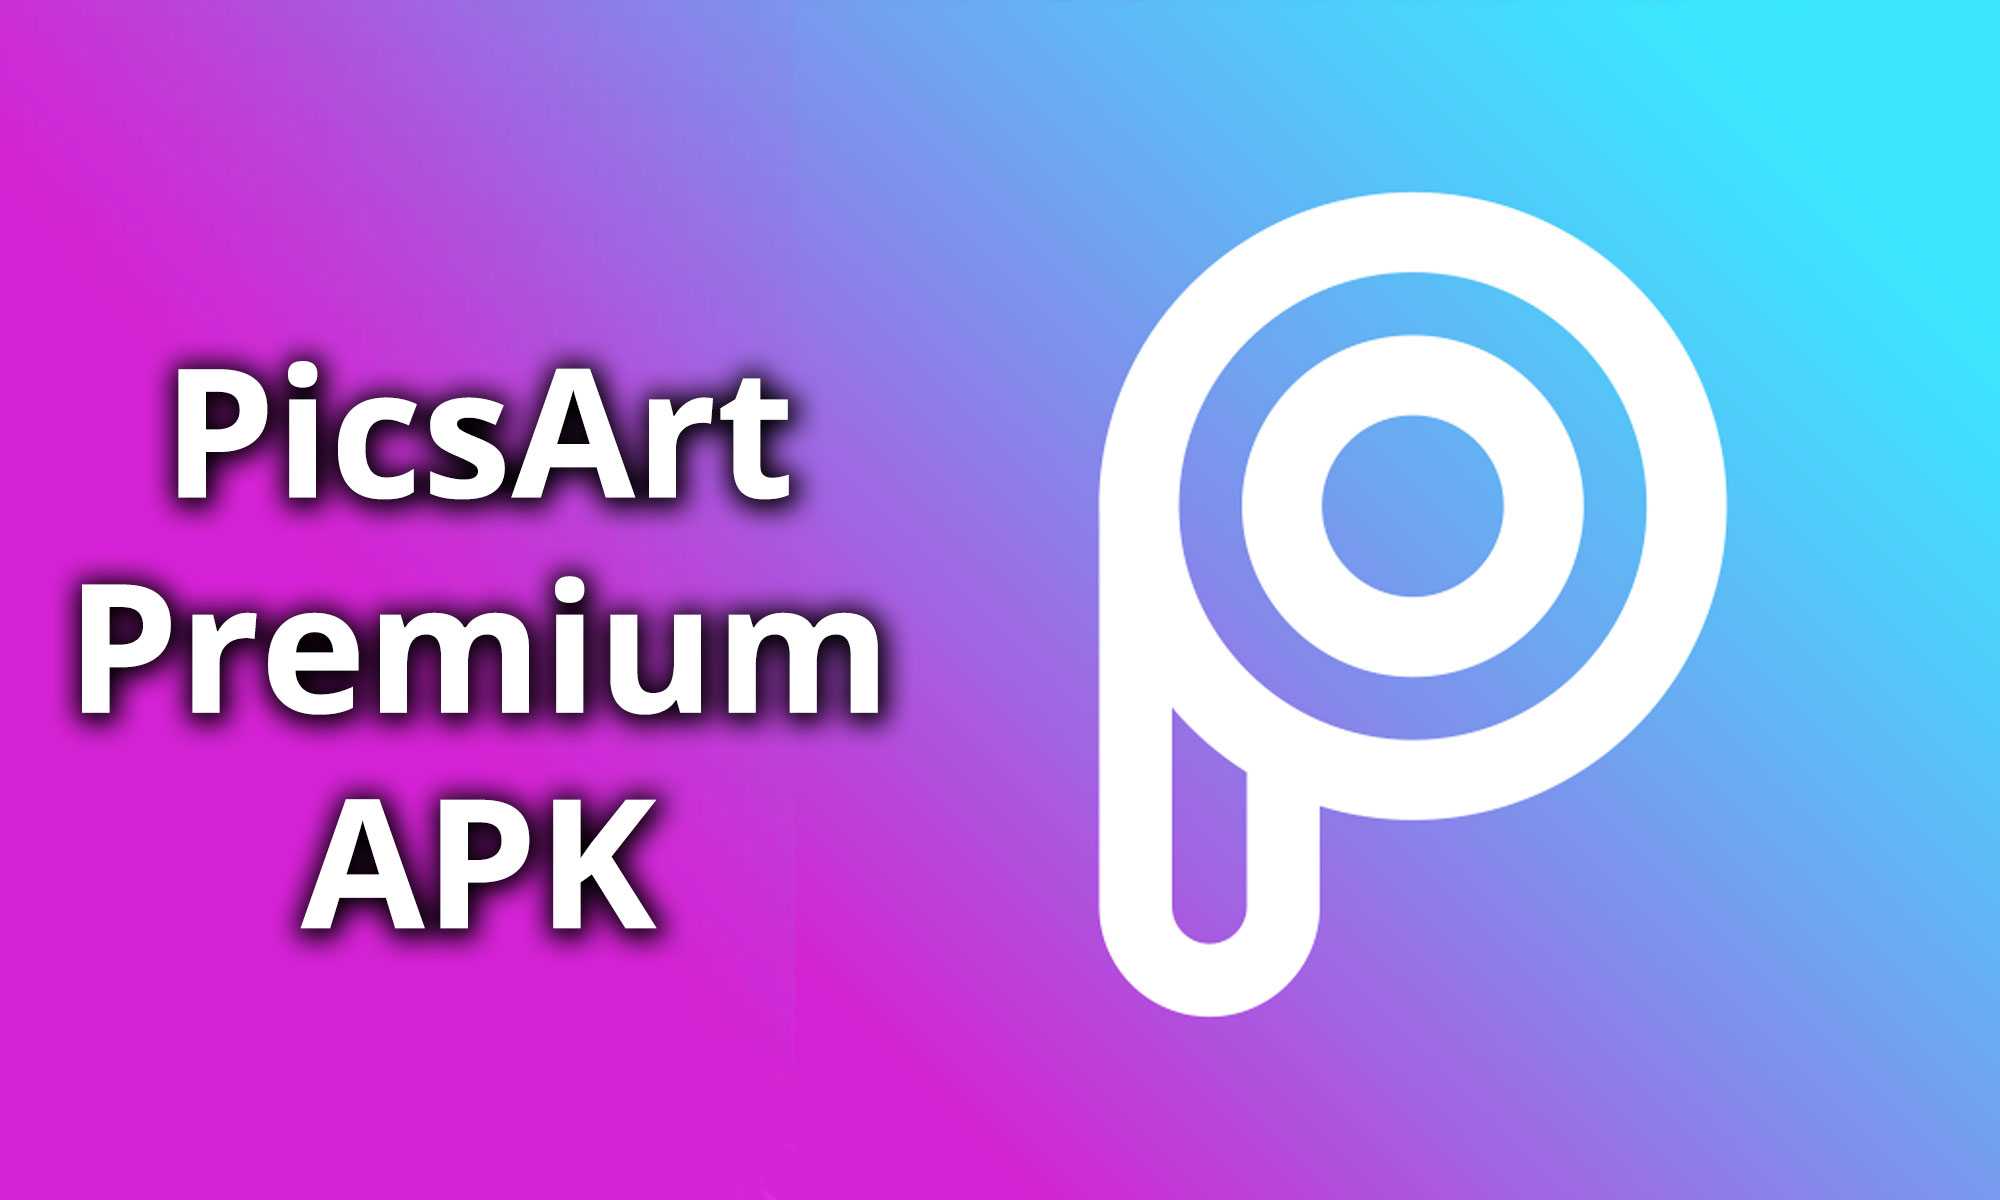 Pixart premium. PICSART Premium. PICSART Premium APK. Фоторедактор пиксарт. Pixart приложение.